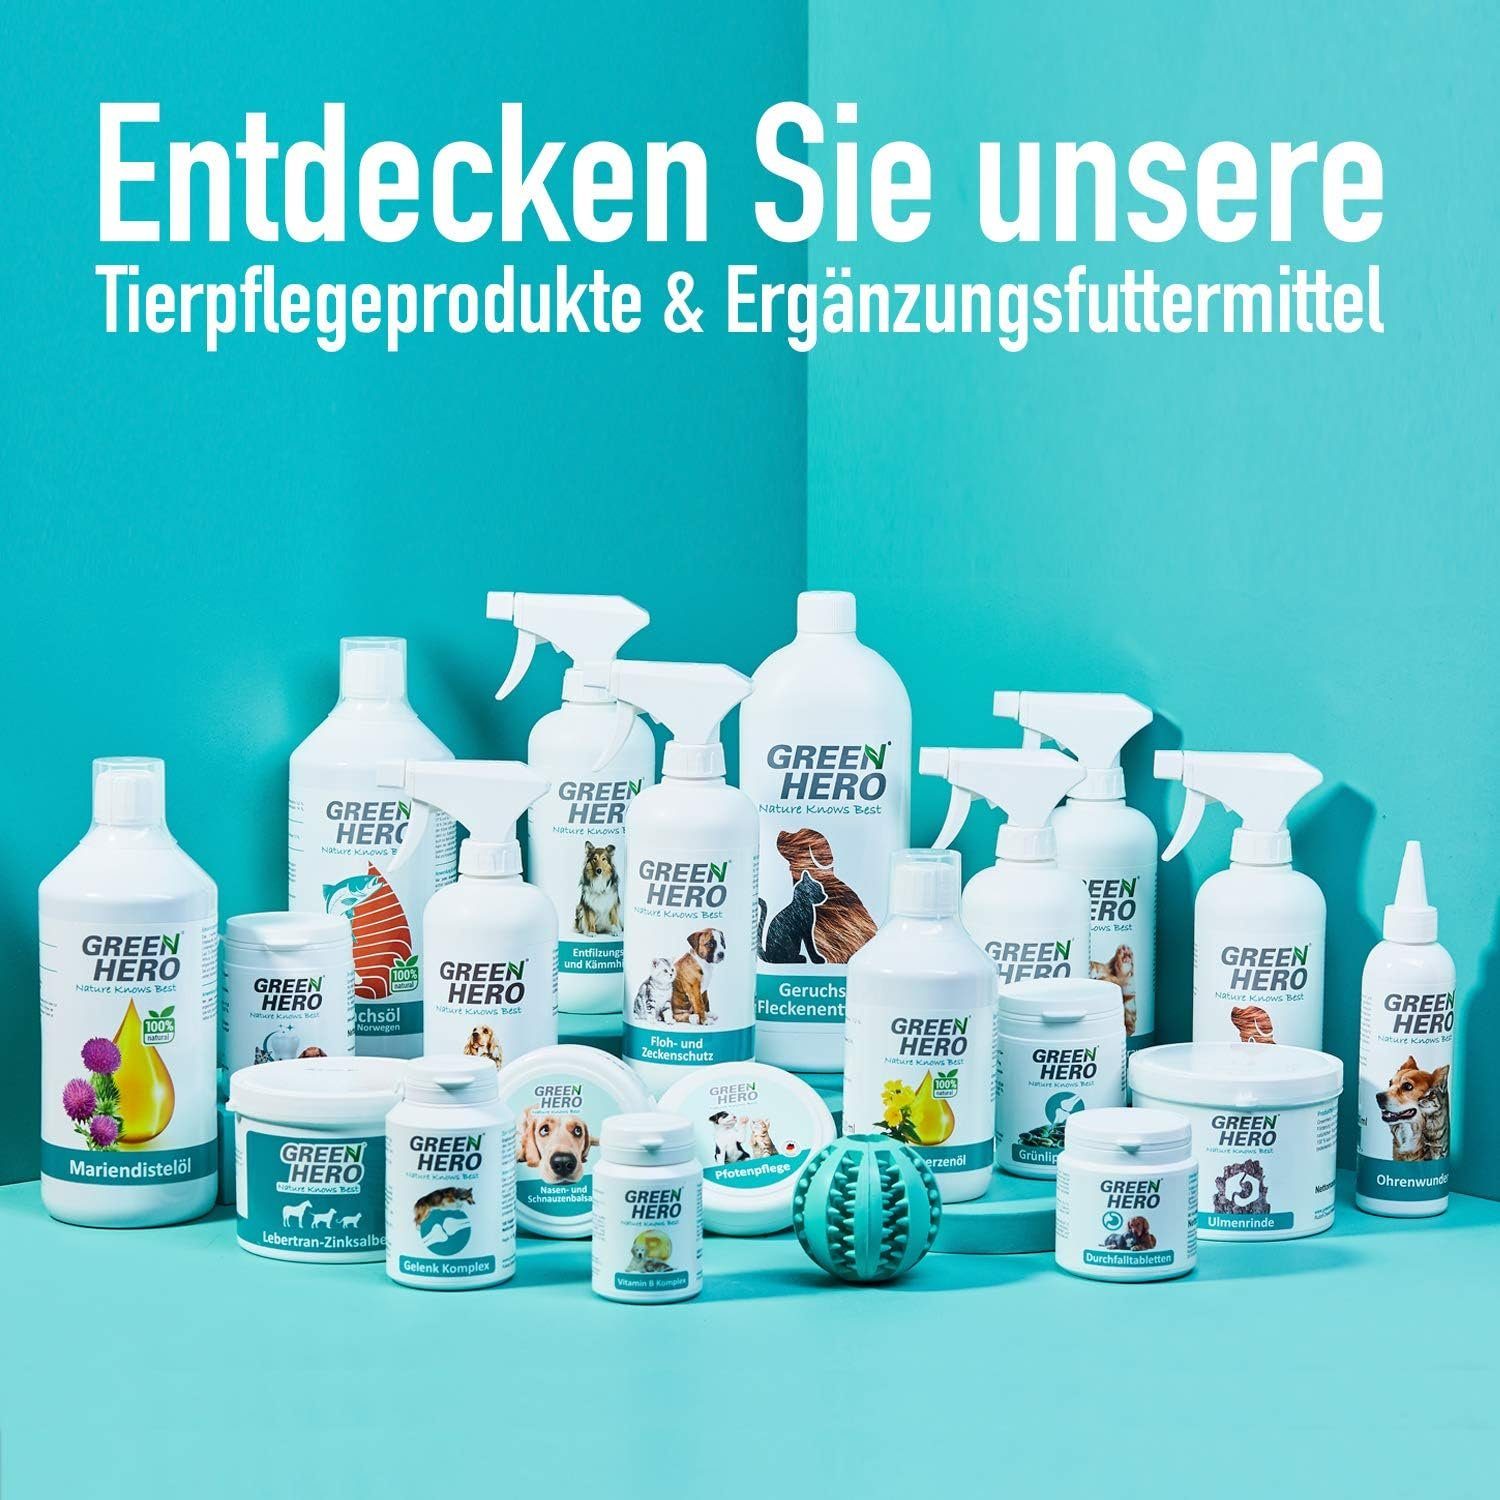 Pferde, Reinigung Trockenshampoo-Spray 500 ml, für Tiershampoo zur Pferdetrockenshampoo GreenHero natürliches